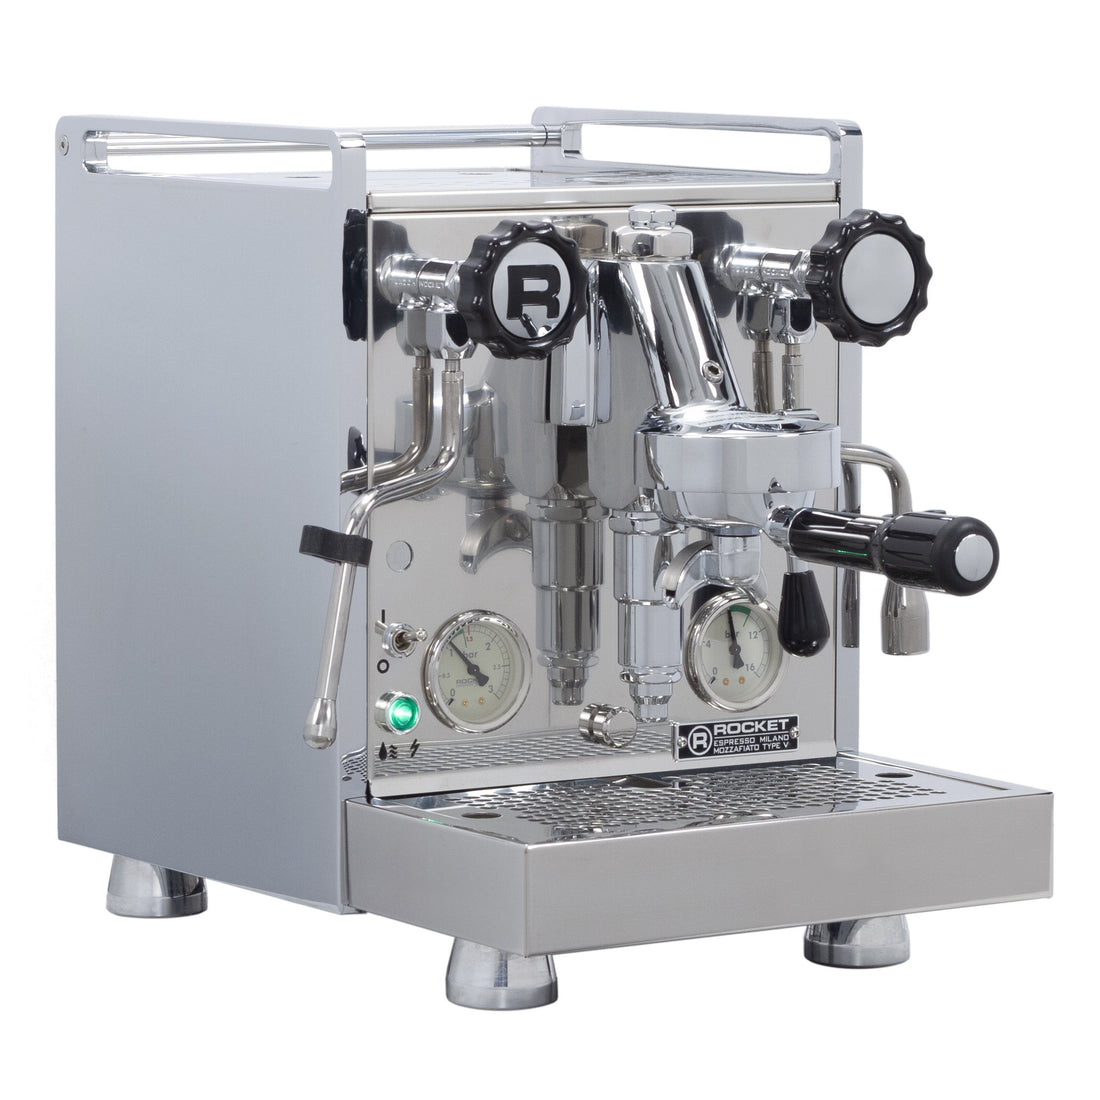 Rocket Espresso Mozzafiato Cronometro V Espresso Machine